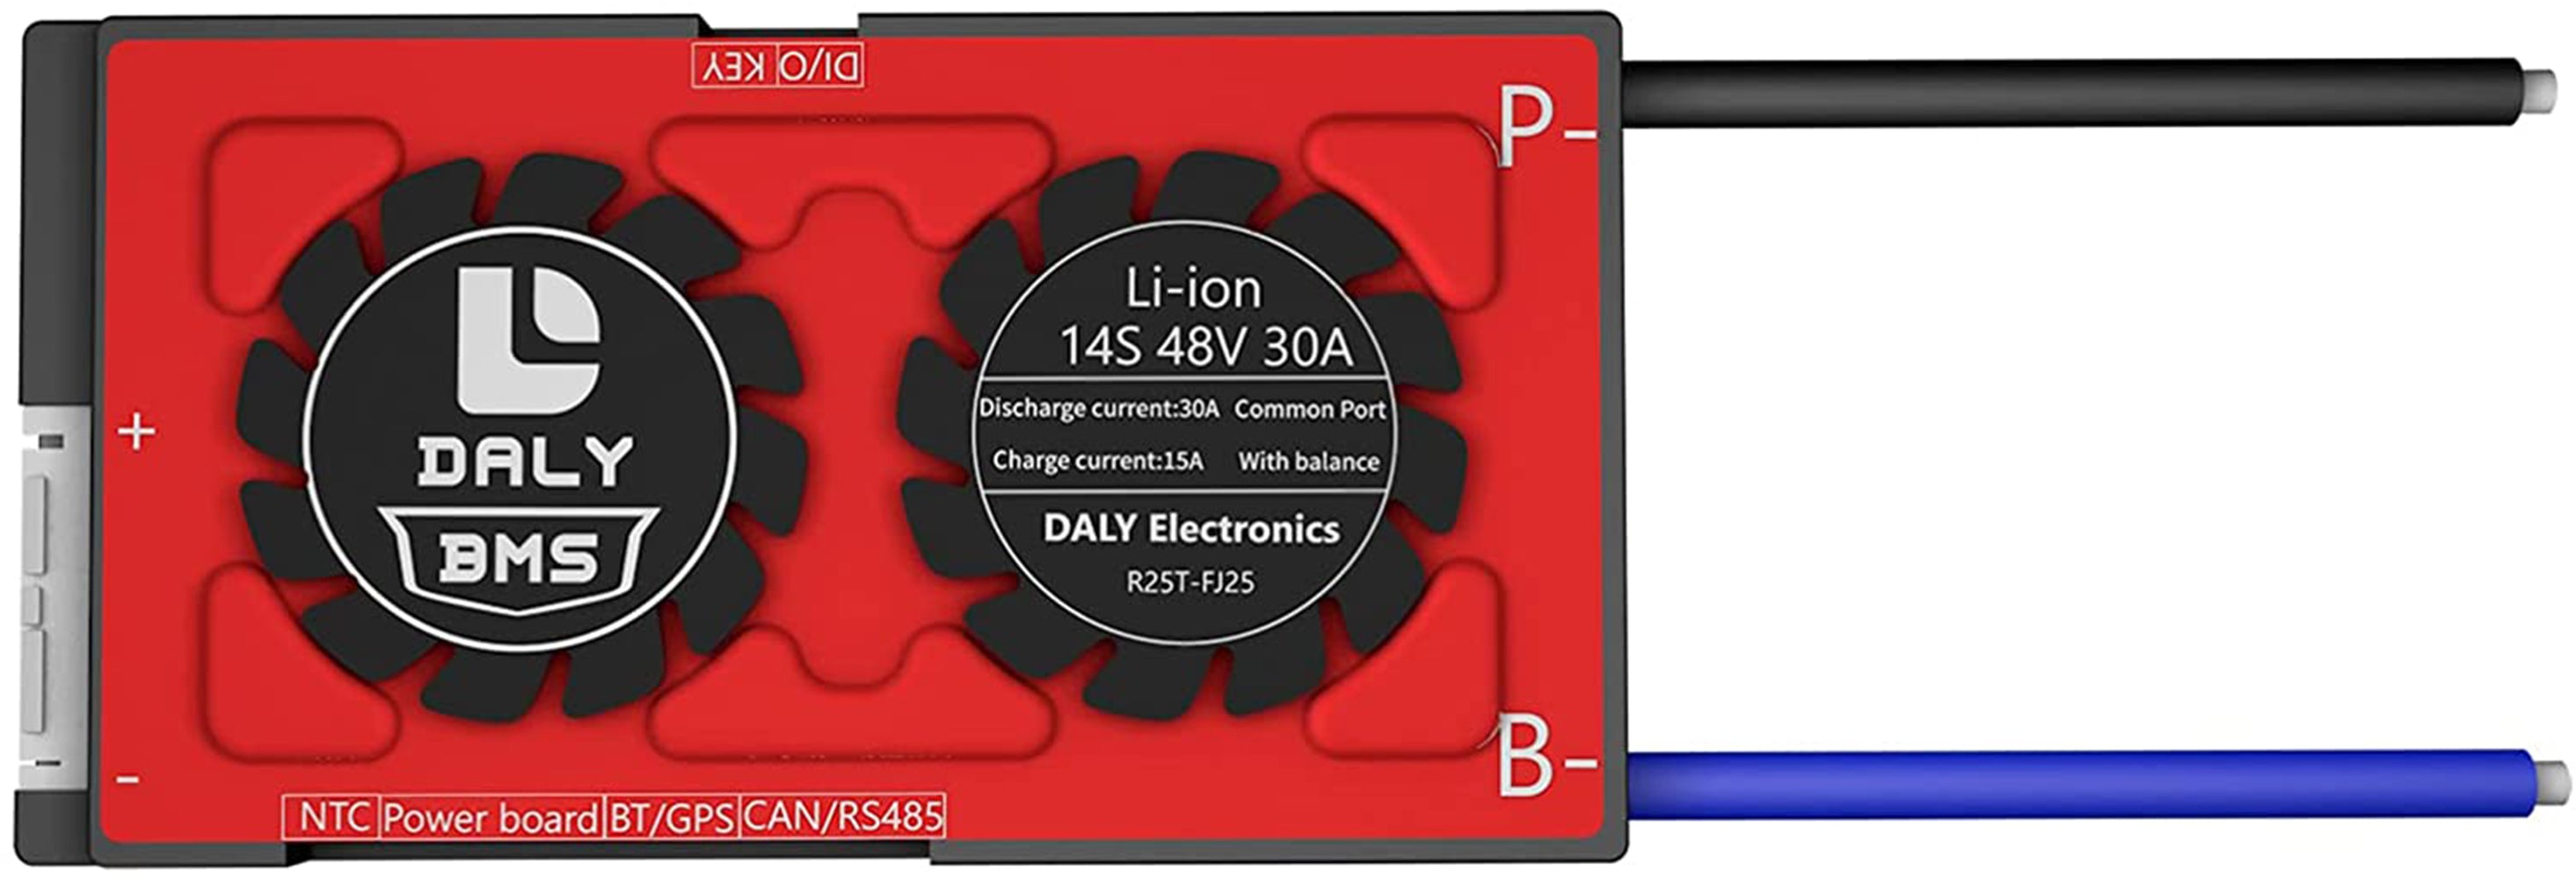 Daly smart bms Li-ion  14S 48V 30A  bluetooth BMS board13 66 128